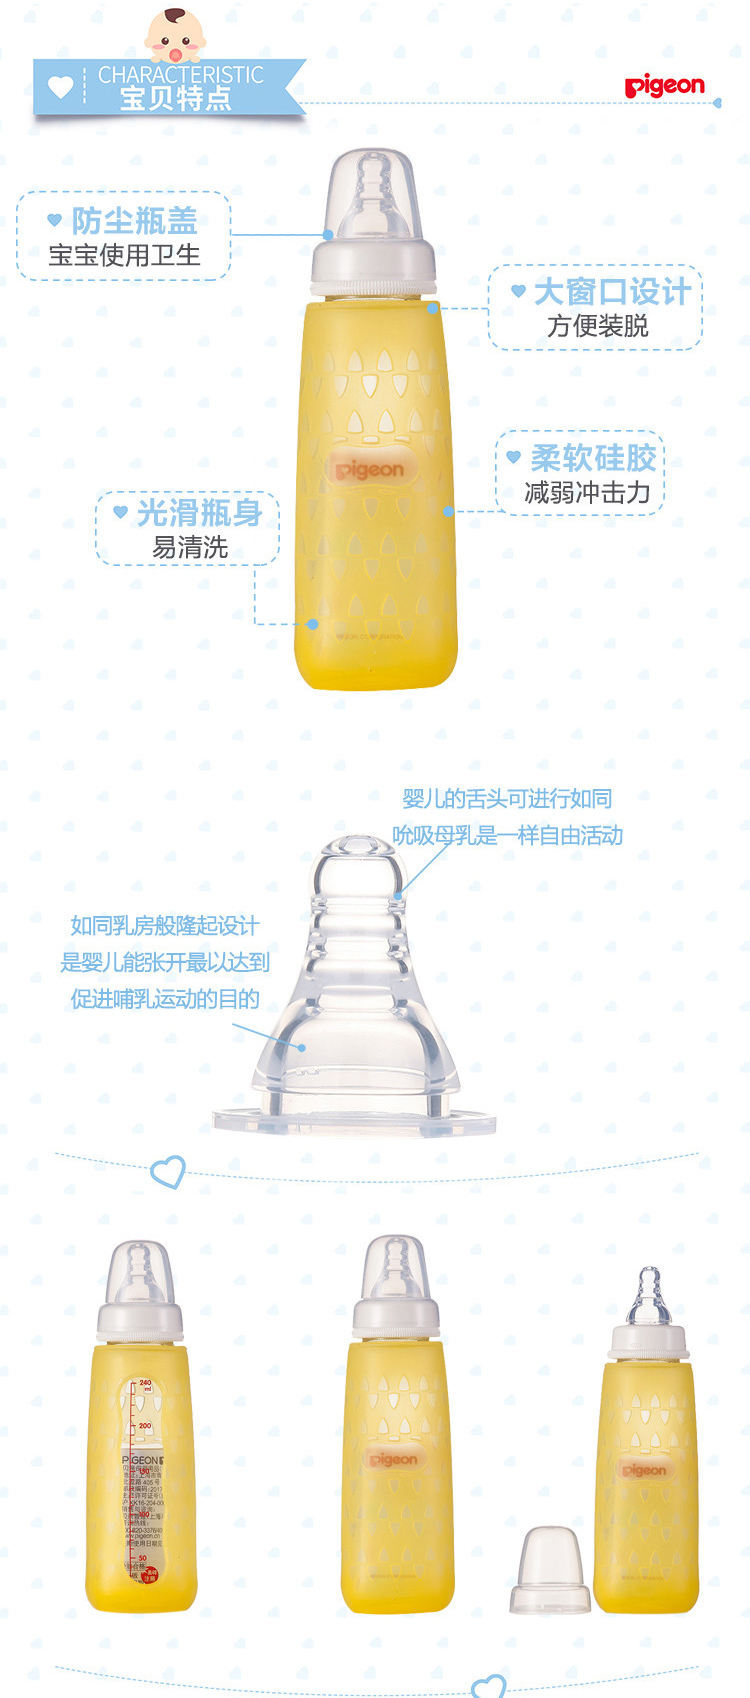 贝亲标准口径玻璃奶瓶安心组合（240ml）-黄色 AA118